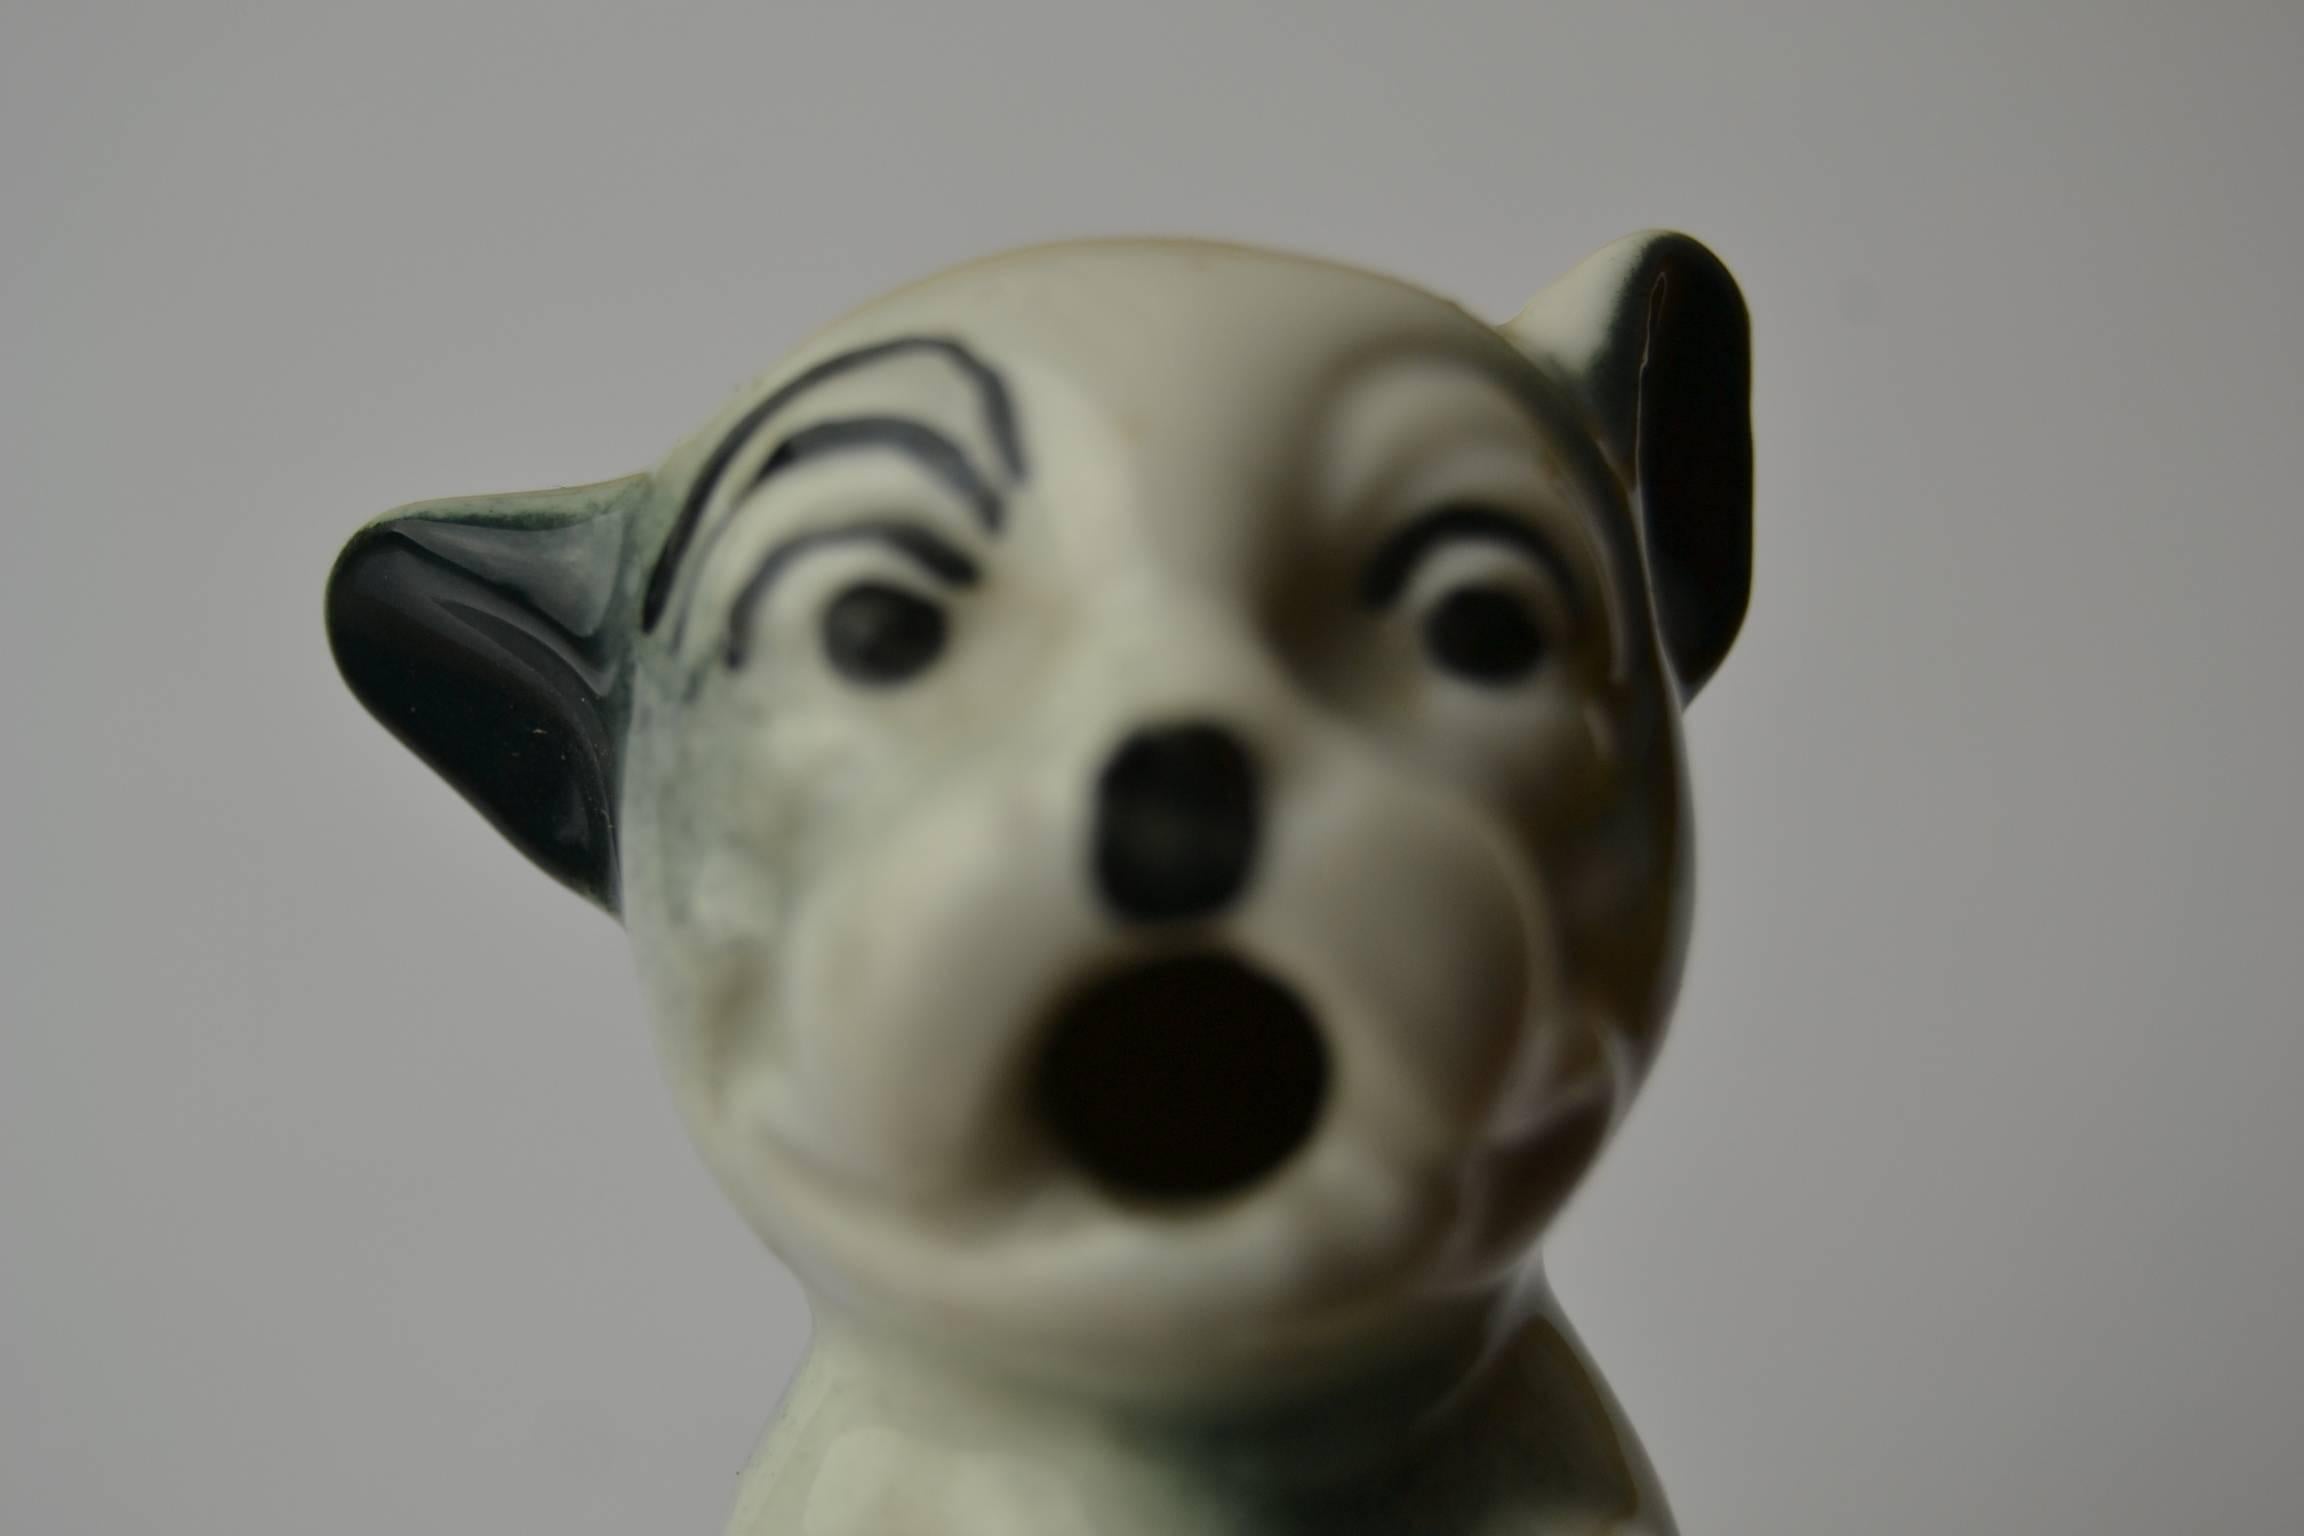 Vintage figural bouteille bouchon - bouchon de bouteille avec une porcelaine bonzo le chien sur le dessus.
Bonzo est une célèbre caricature de chien bouledogue.  


 